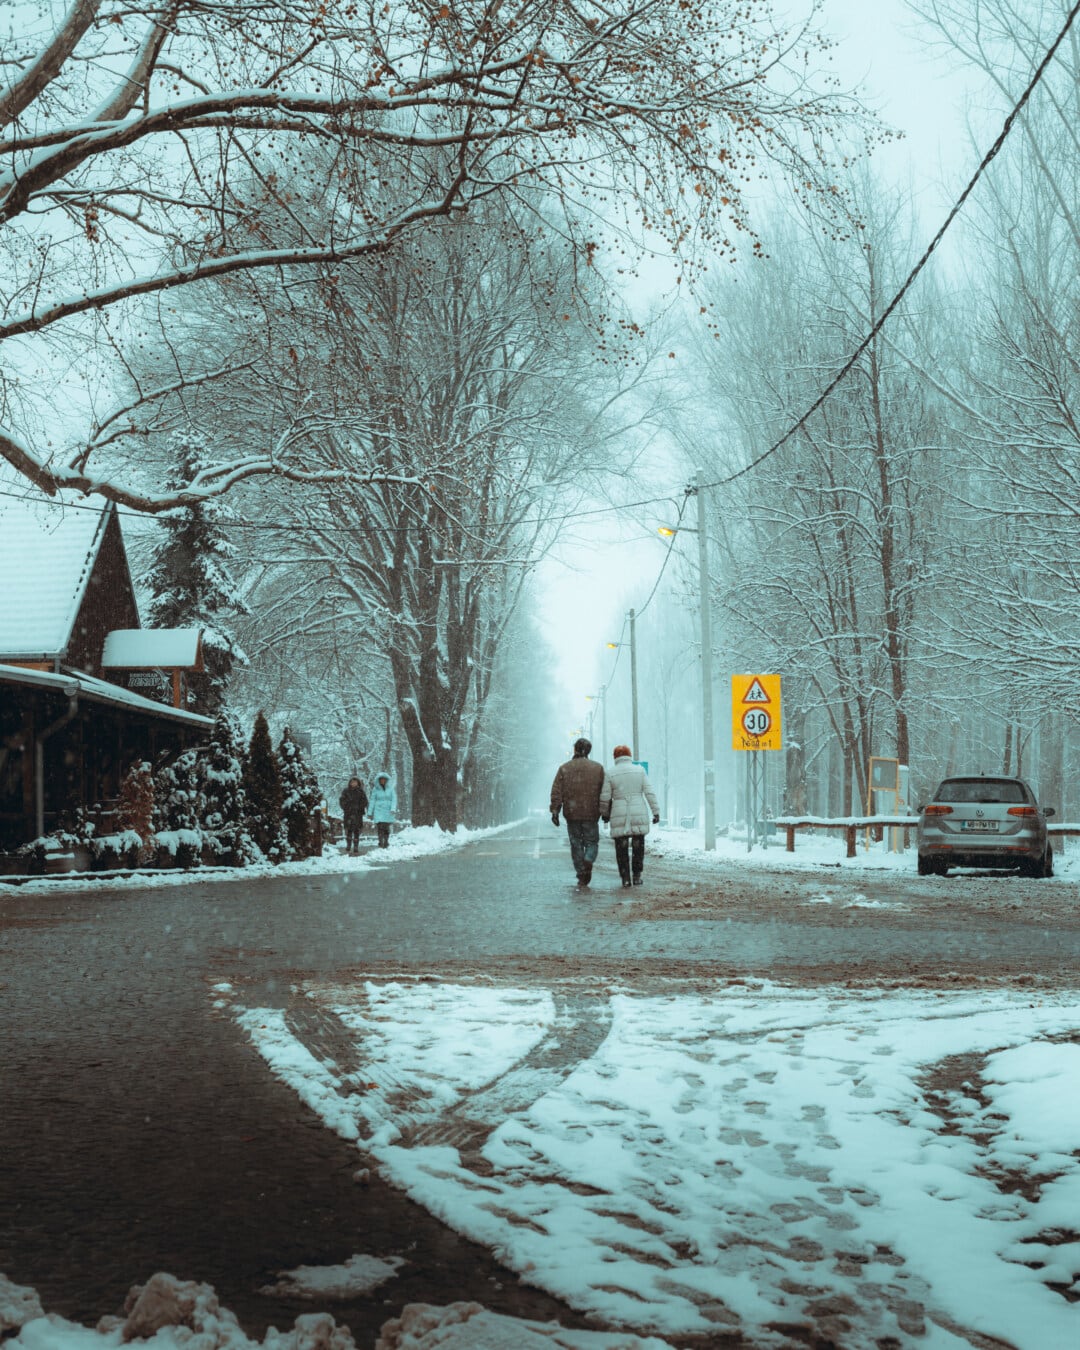 đường, mùa đông, đi bộ, thời tiết xấu, bão tuyết, tuyết rơi, người, ngã tư đường, kiểm soát giao thông, thời tiết